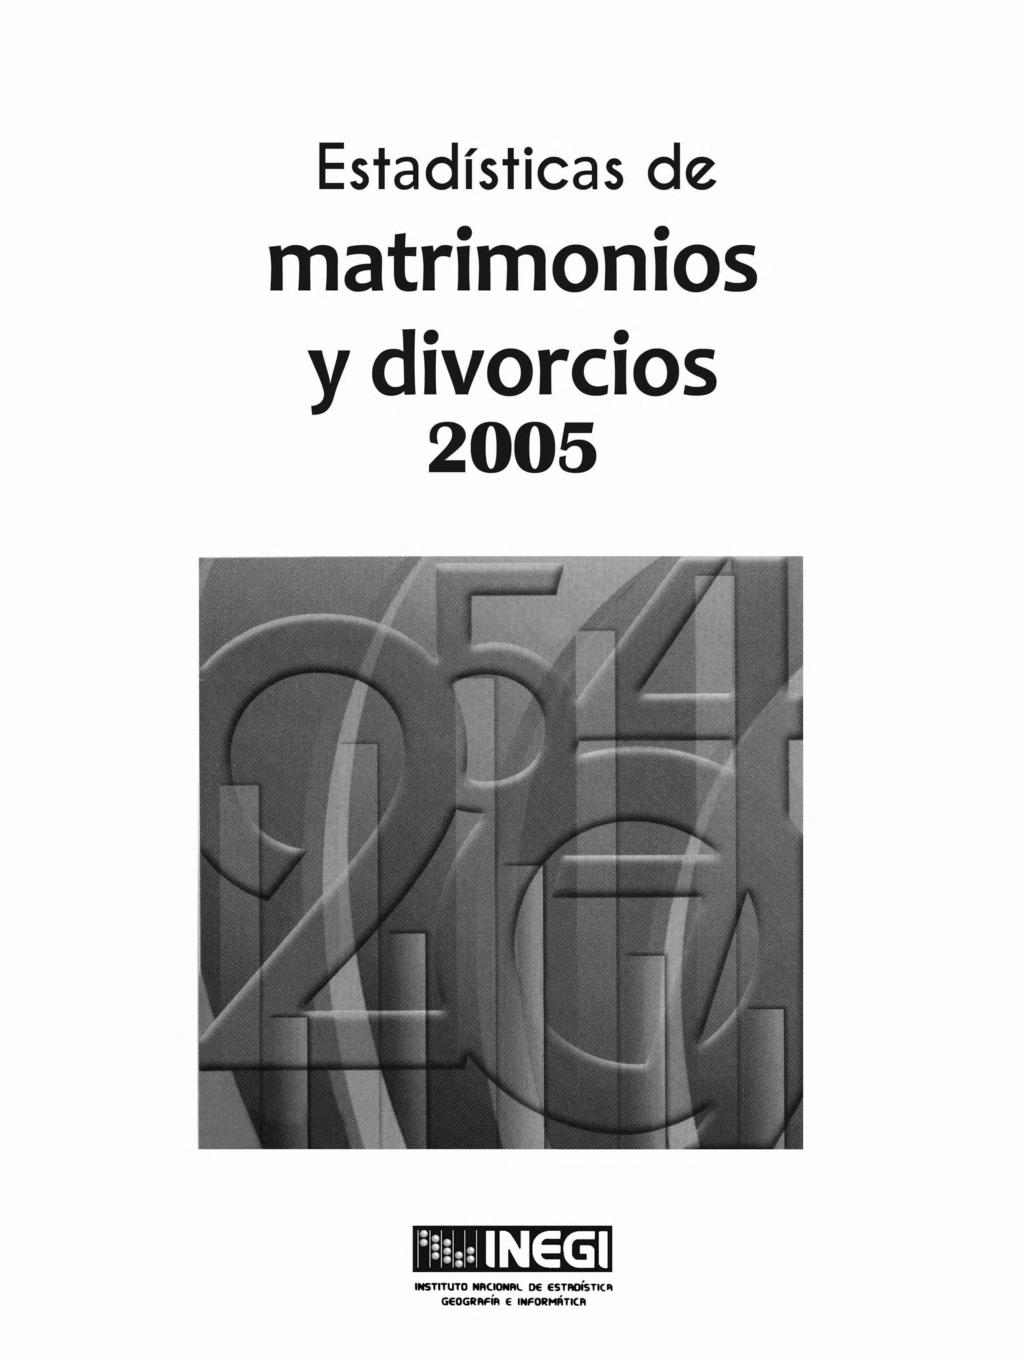 Estadísticas de matrimonios y divorcios m INGGI